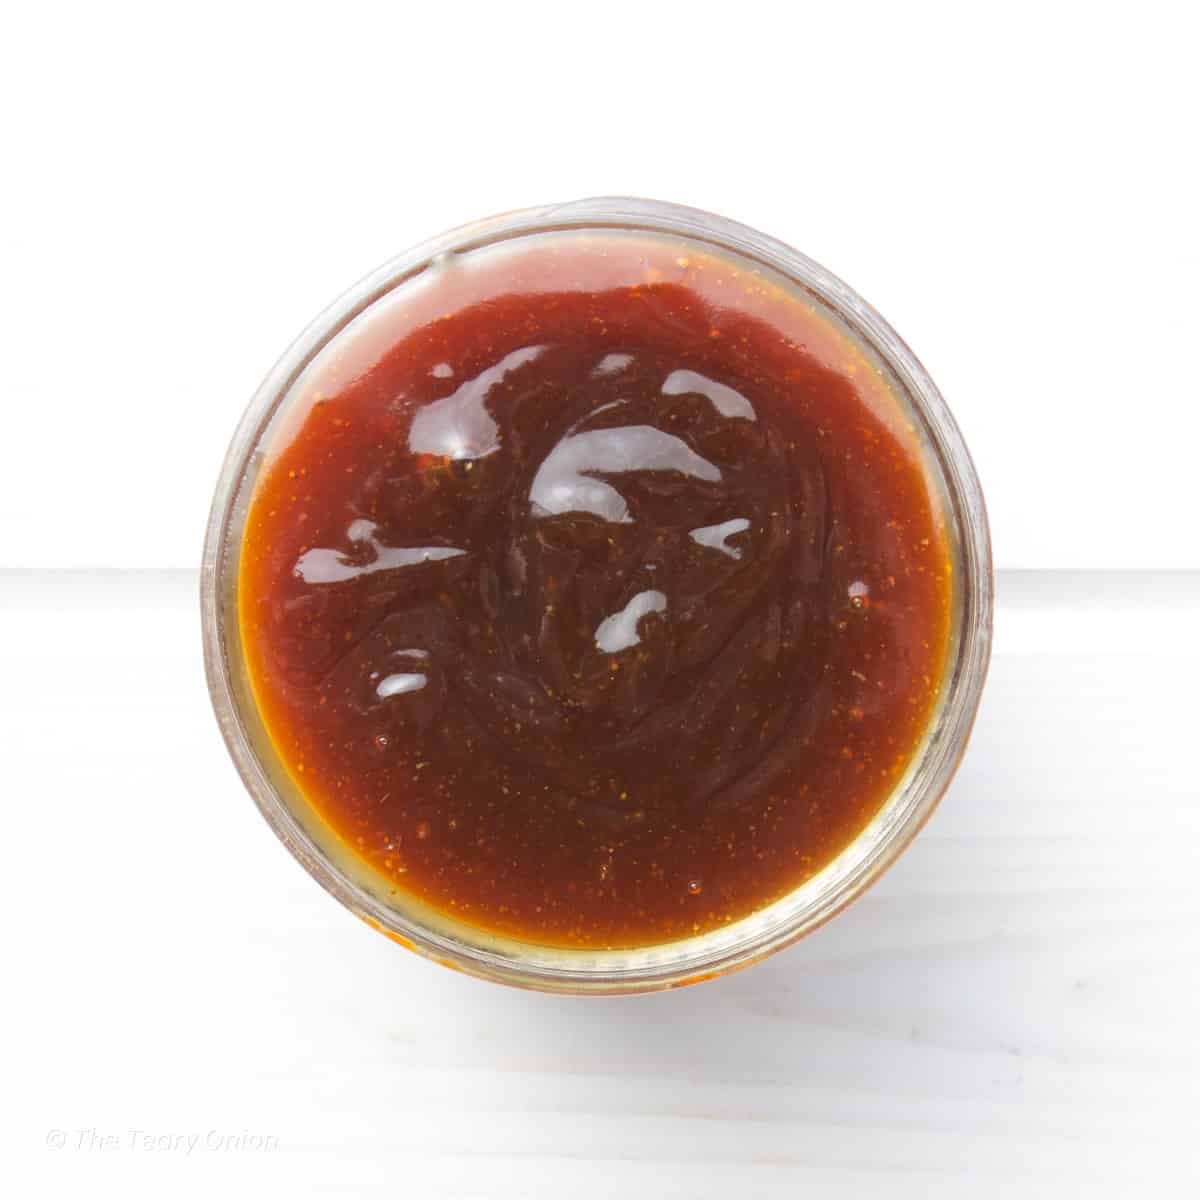 Teriyaki sauce in a jar.